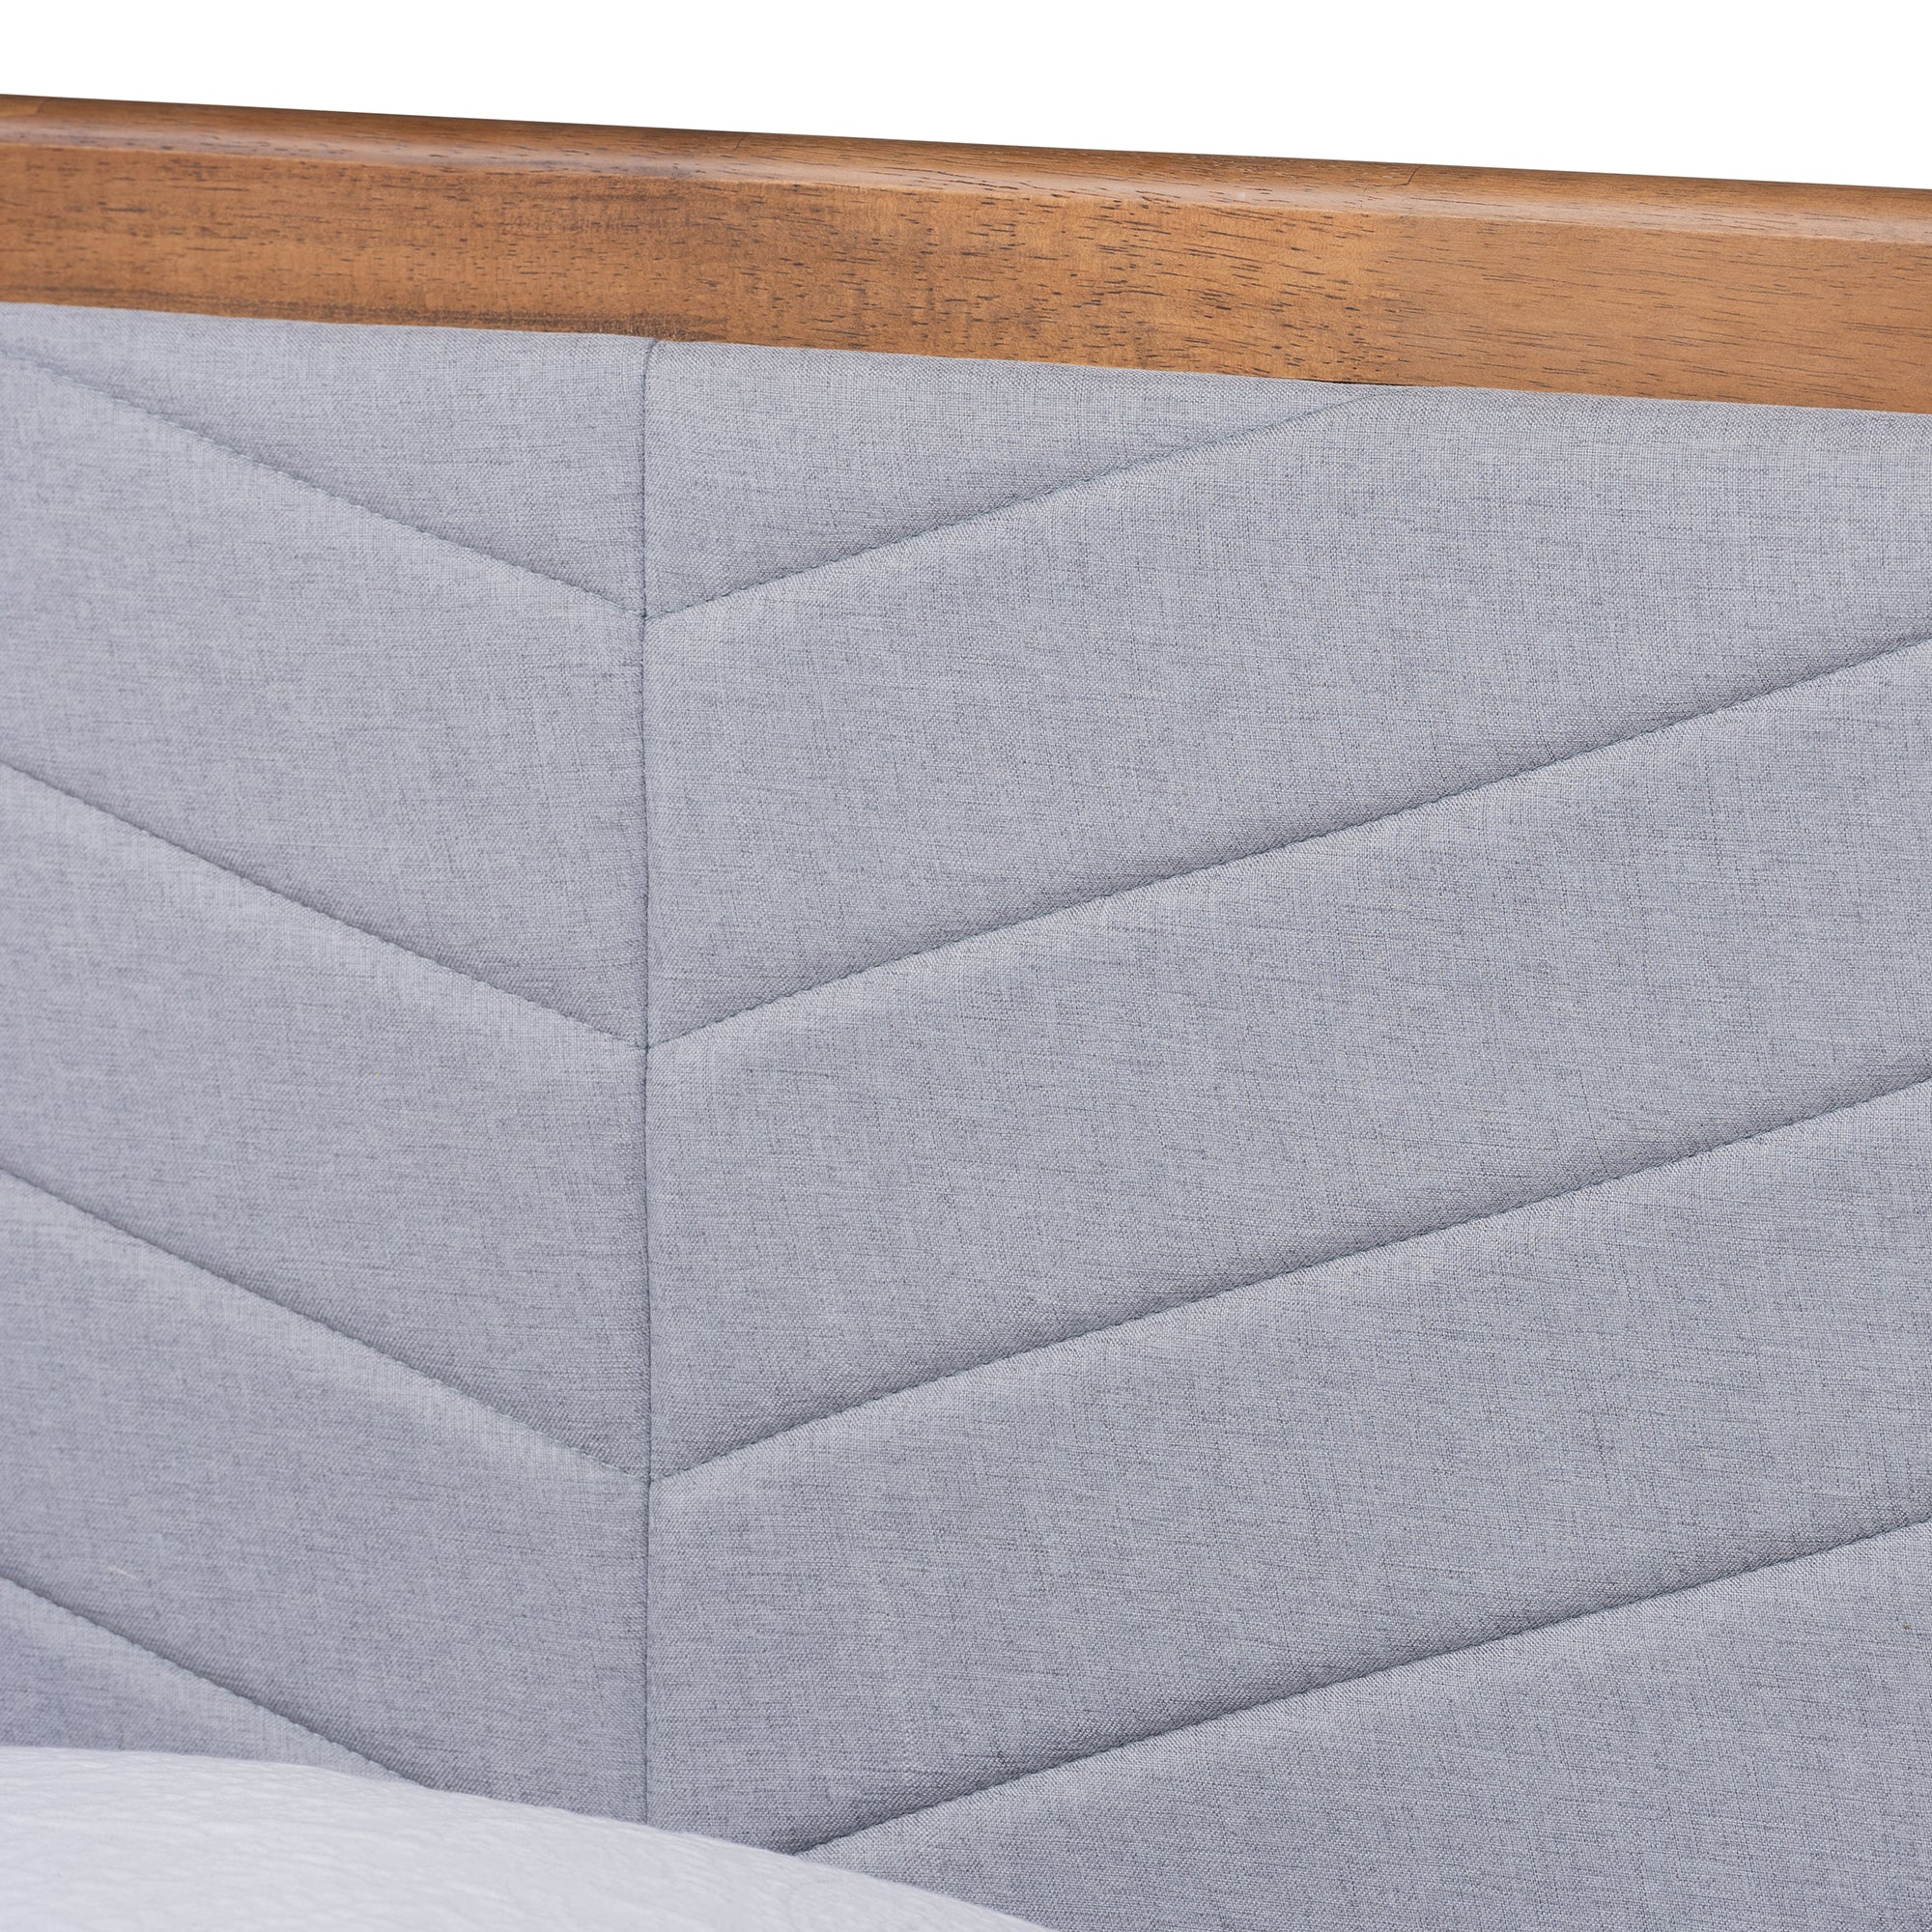 Tasha Mid-Century Bed-Bed-Baxton Studio - WI-Wall2Wall Furnishings